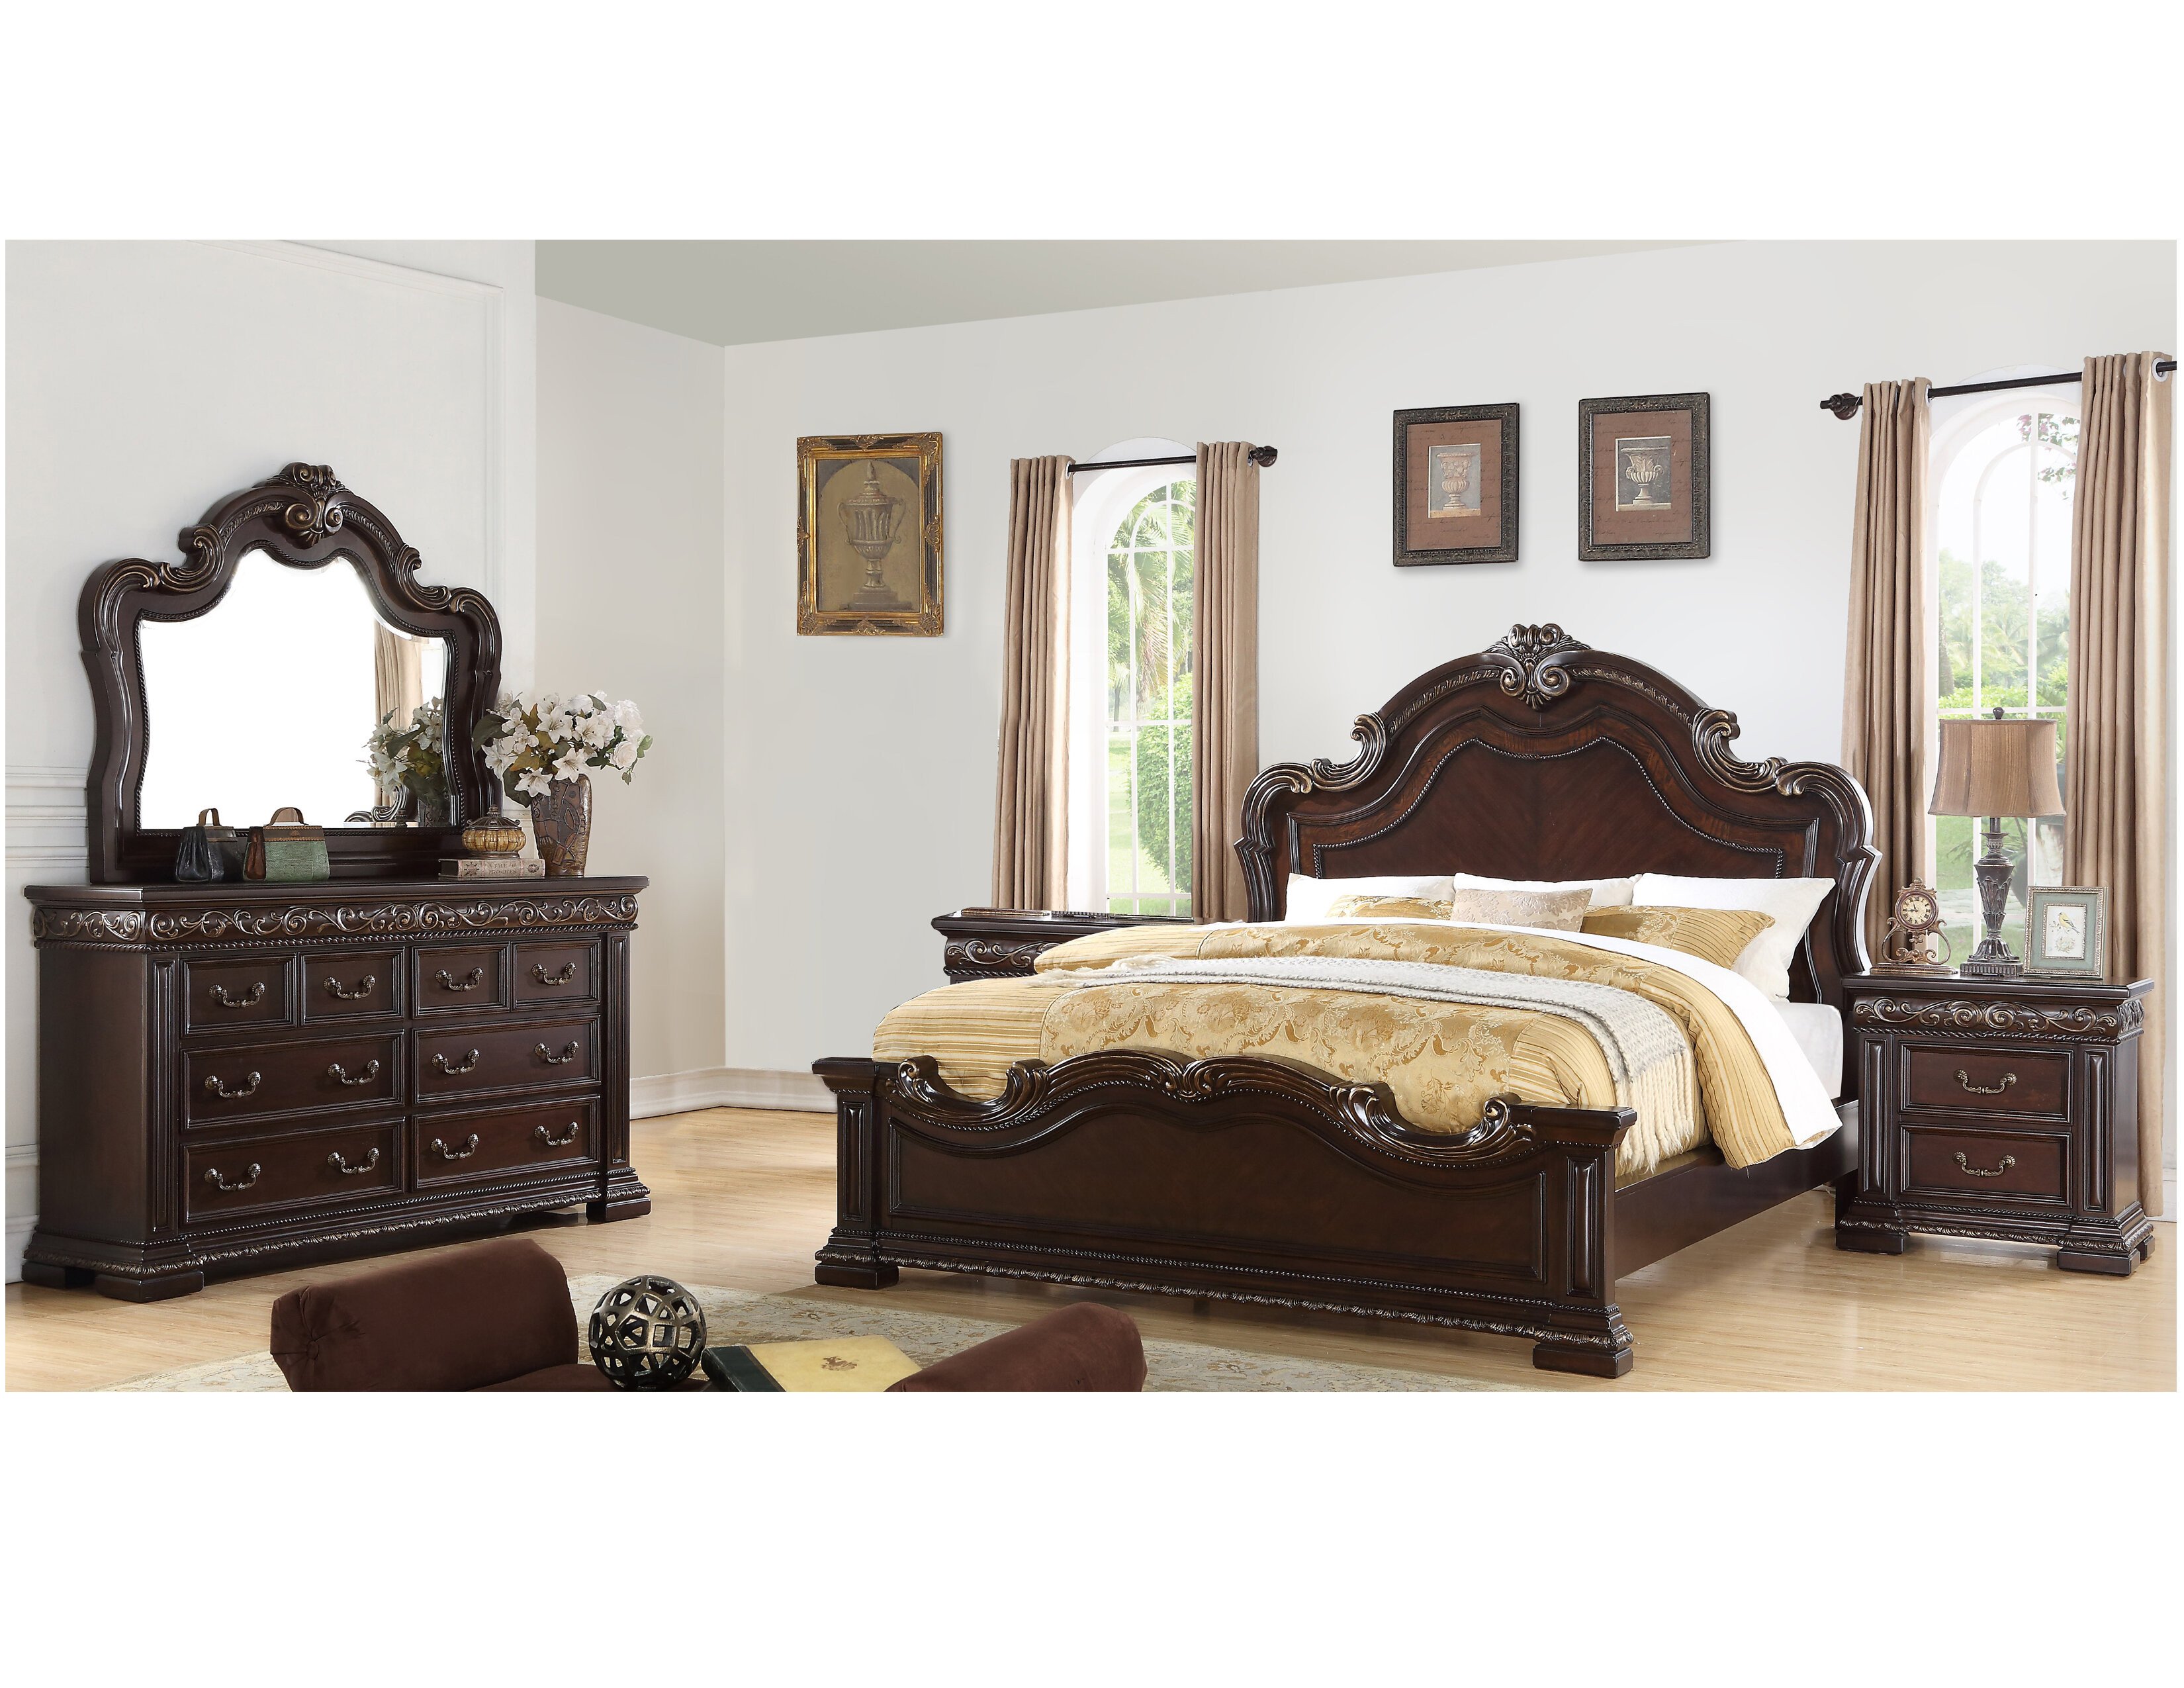 Tufted Queen Bedroom Set Elegant Bannruod Standard solid Wood 5 Piece Bedroom Set